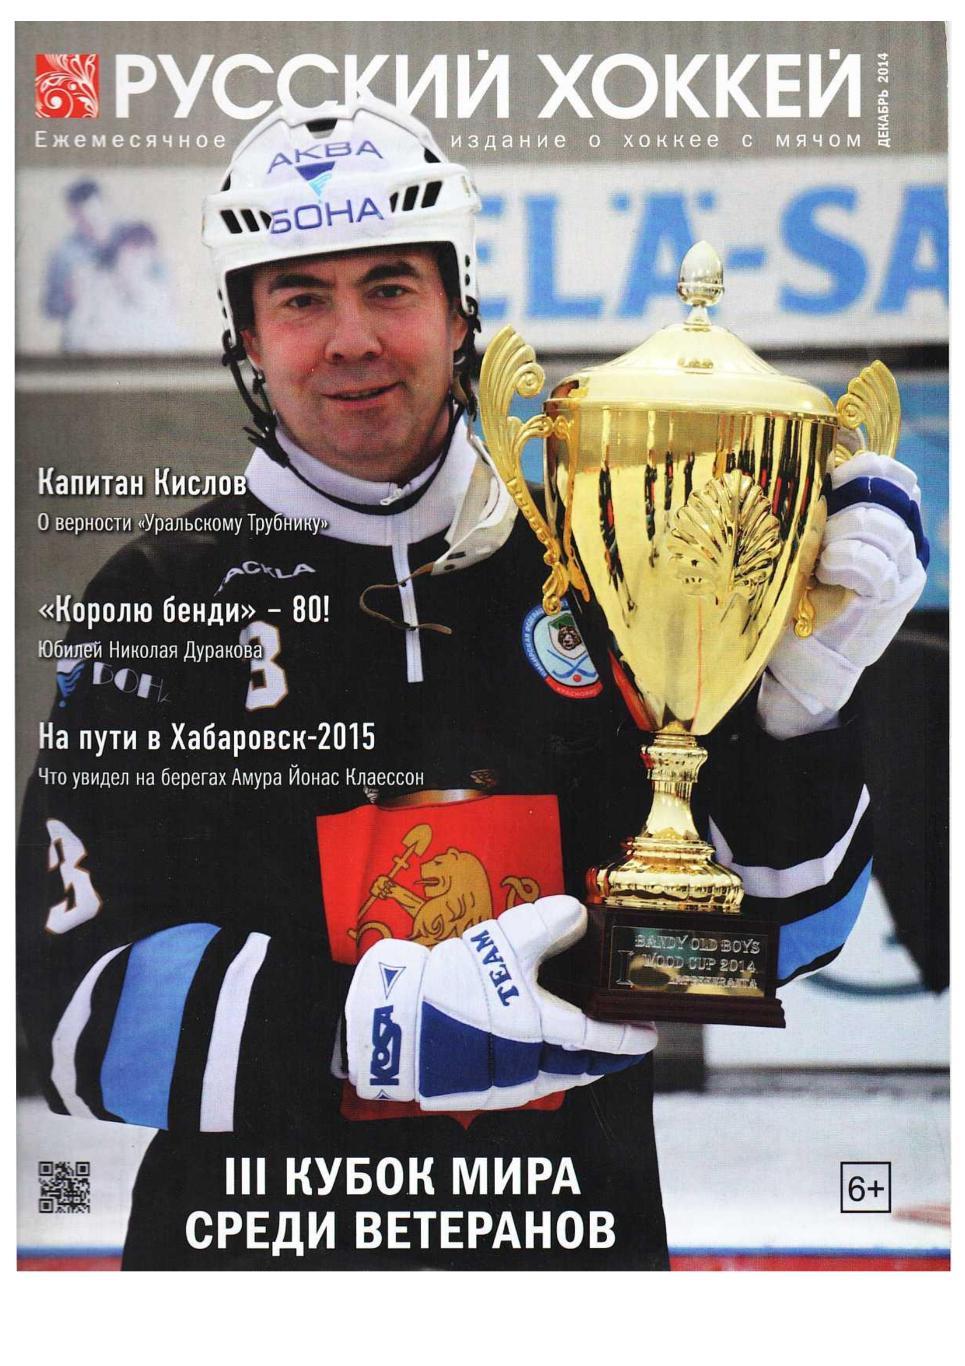 Русский хоккей. Декабрь 2014. Ежемесячное федеральное издание о хоккее с мячом.